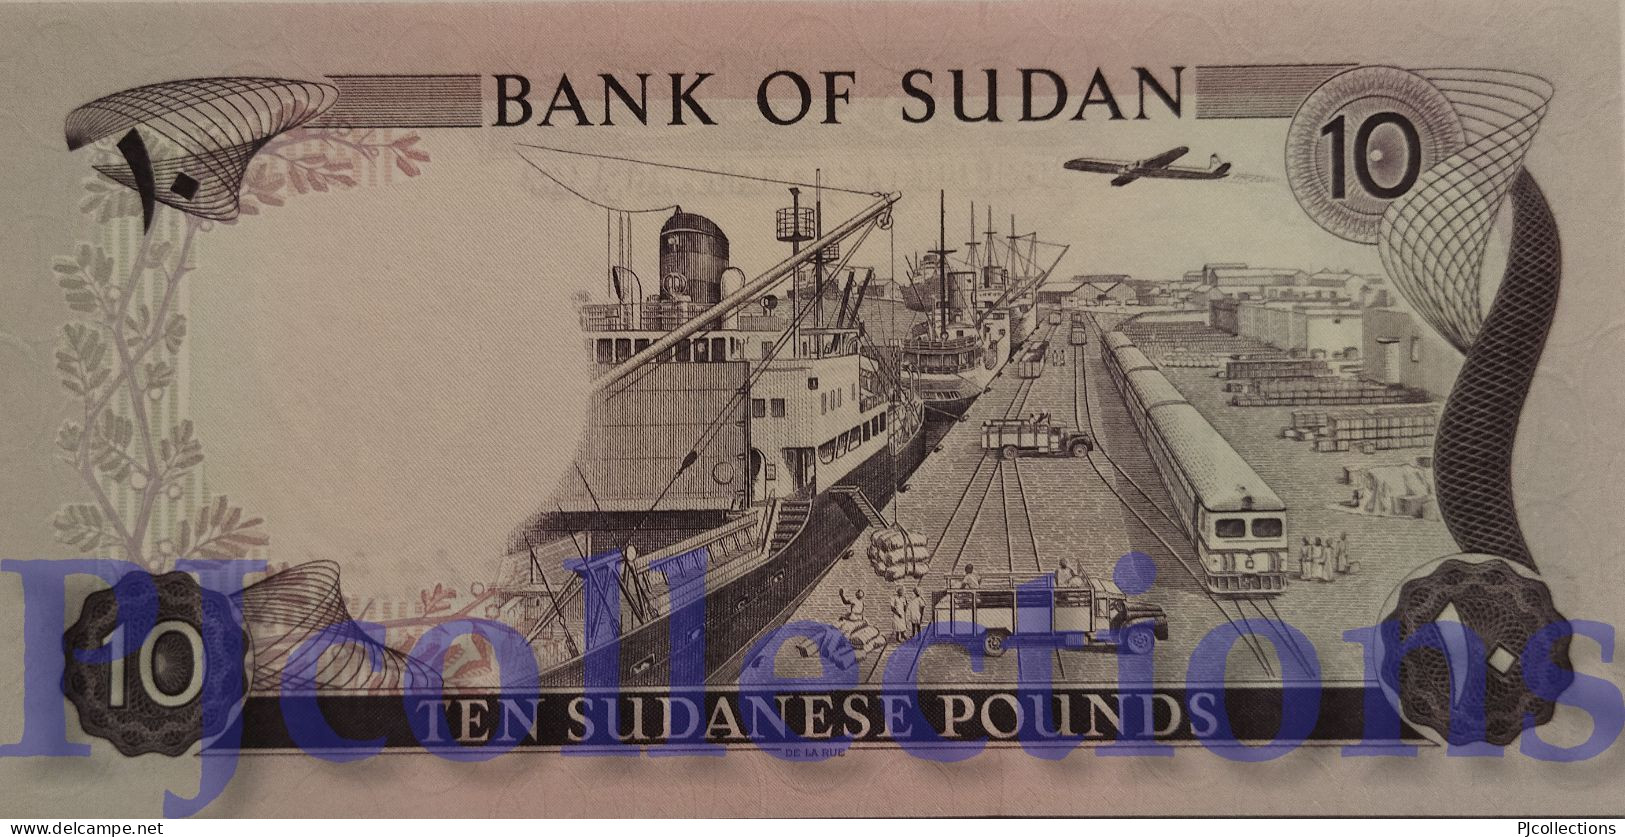 SUDAN 10 POUNDS 1980 PICK 15c UNC LOW SERIAL NUMBER "002035" - Soudan